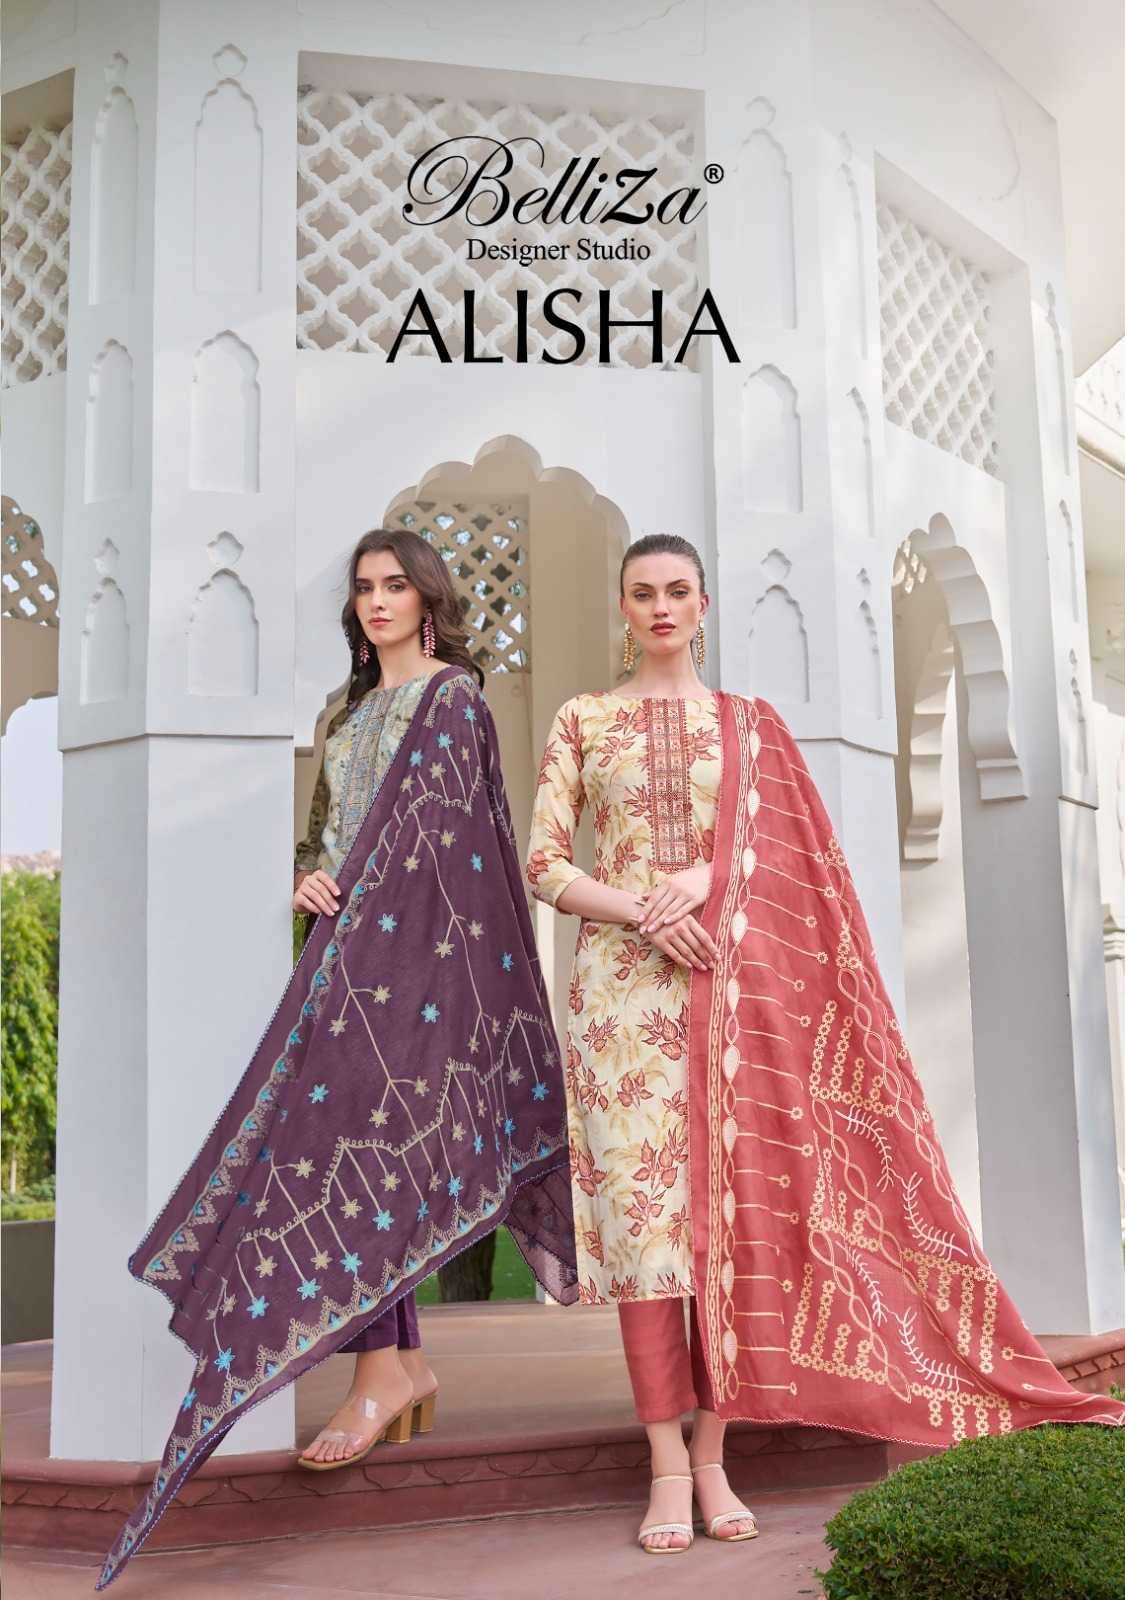 belliza alisha series 927001-927008 Pure Blossom Cotton suit